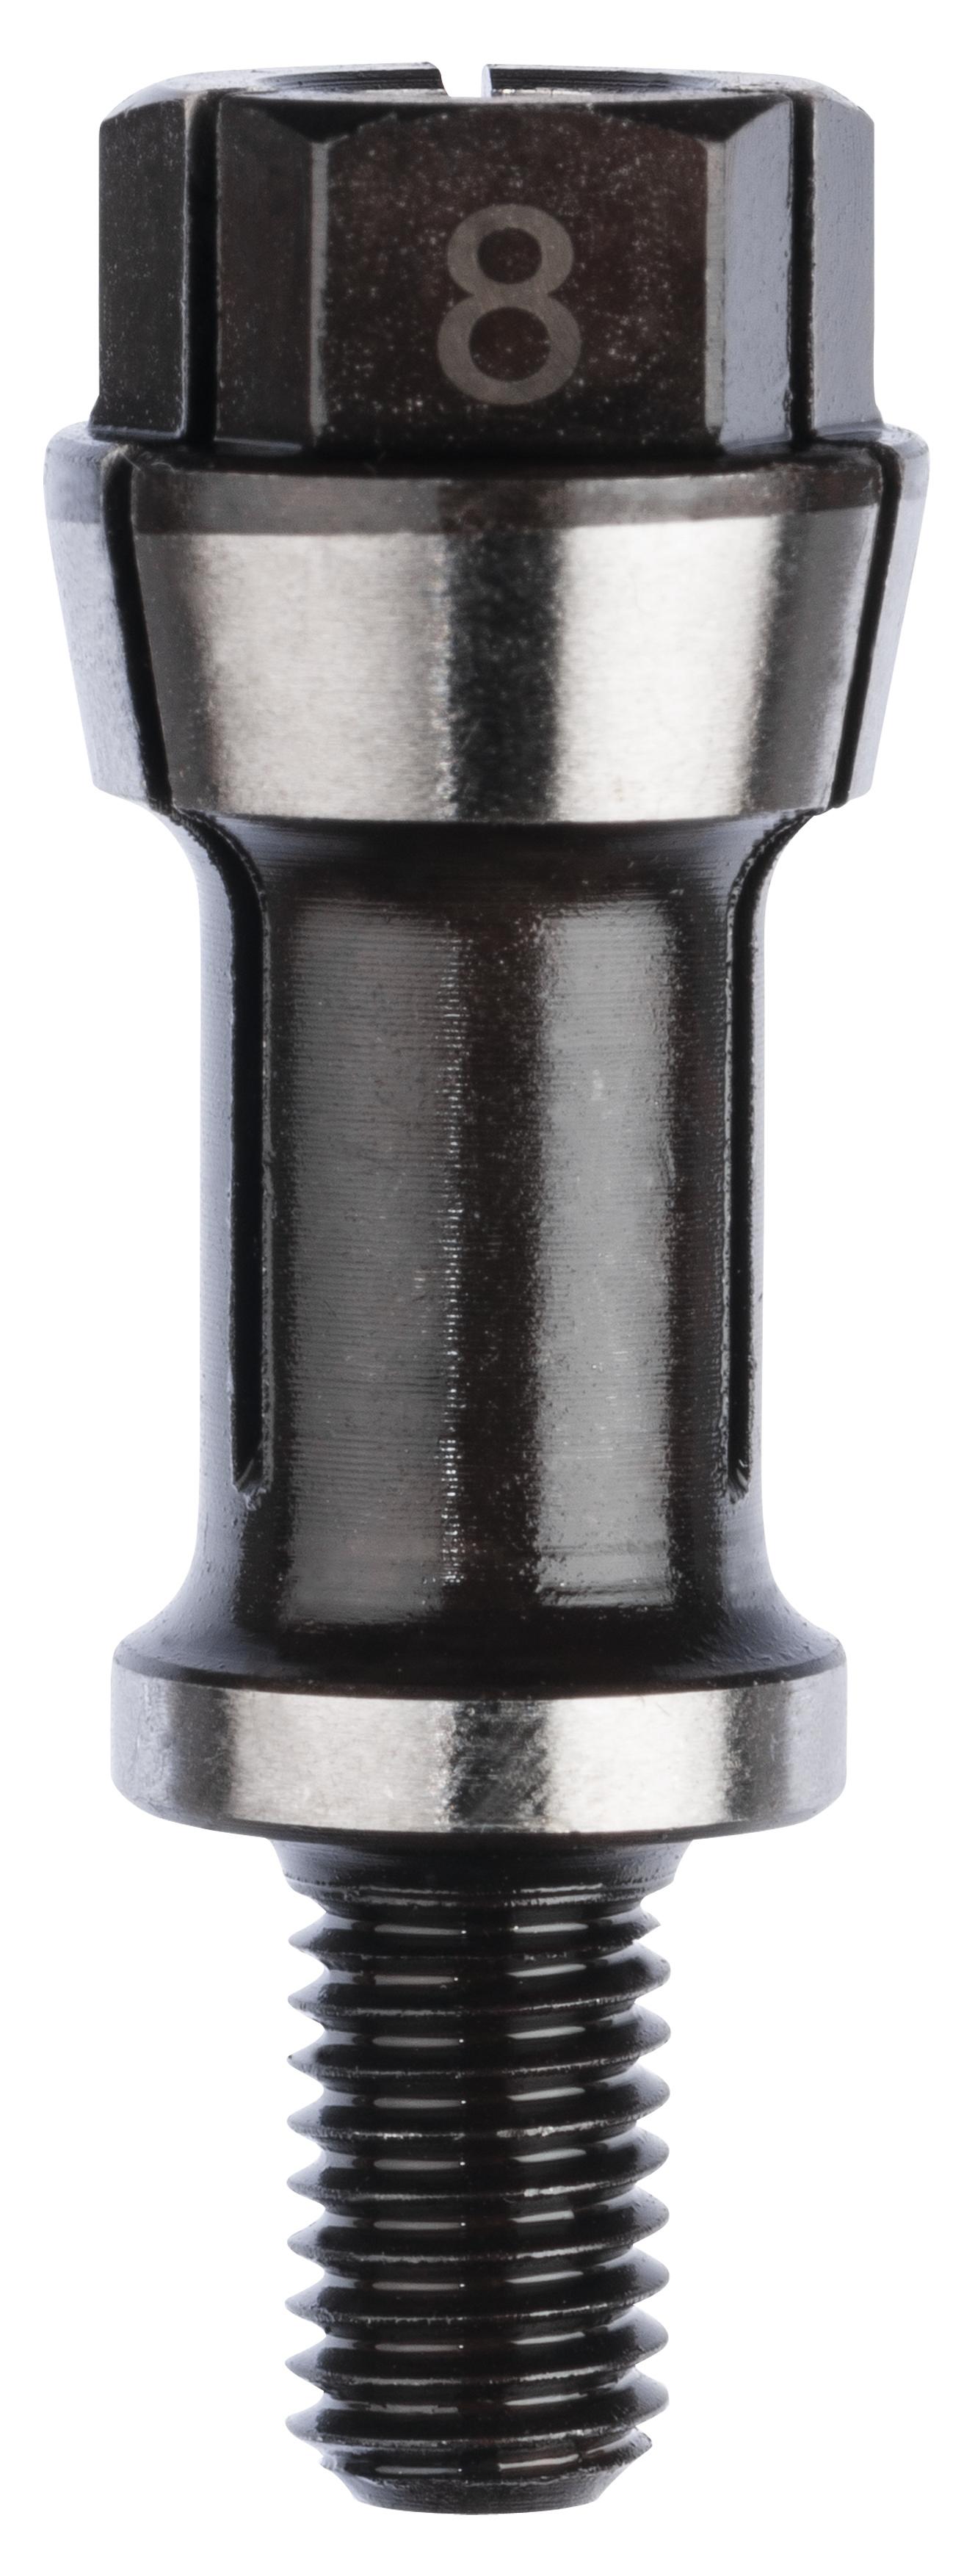 Selected image for Bosch Stezna čaura sa steznom navrtkom 1608570041, 8 mm